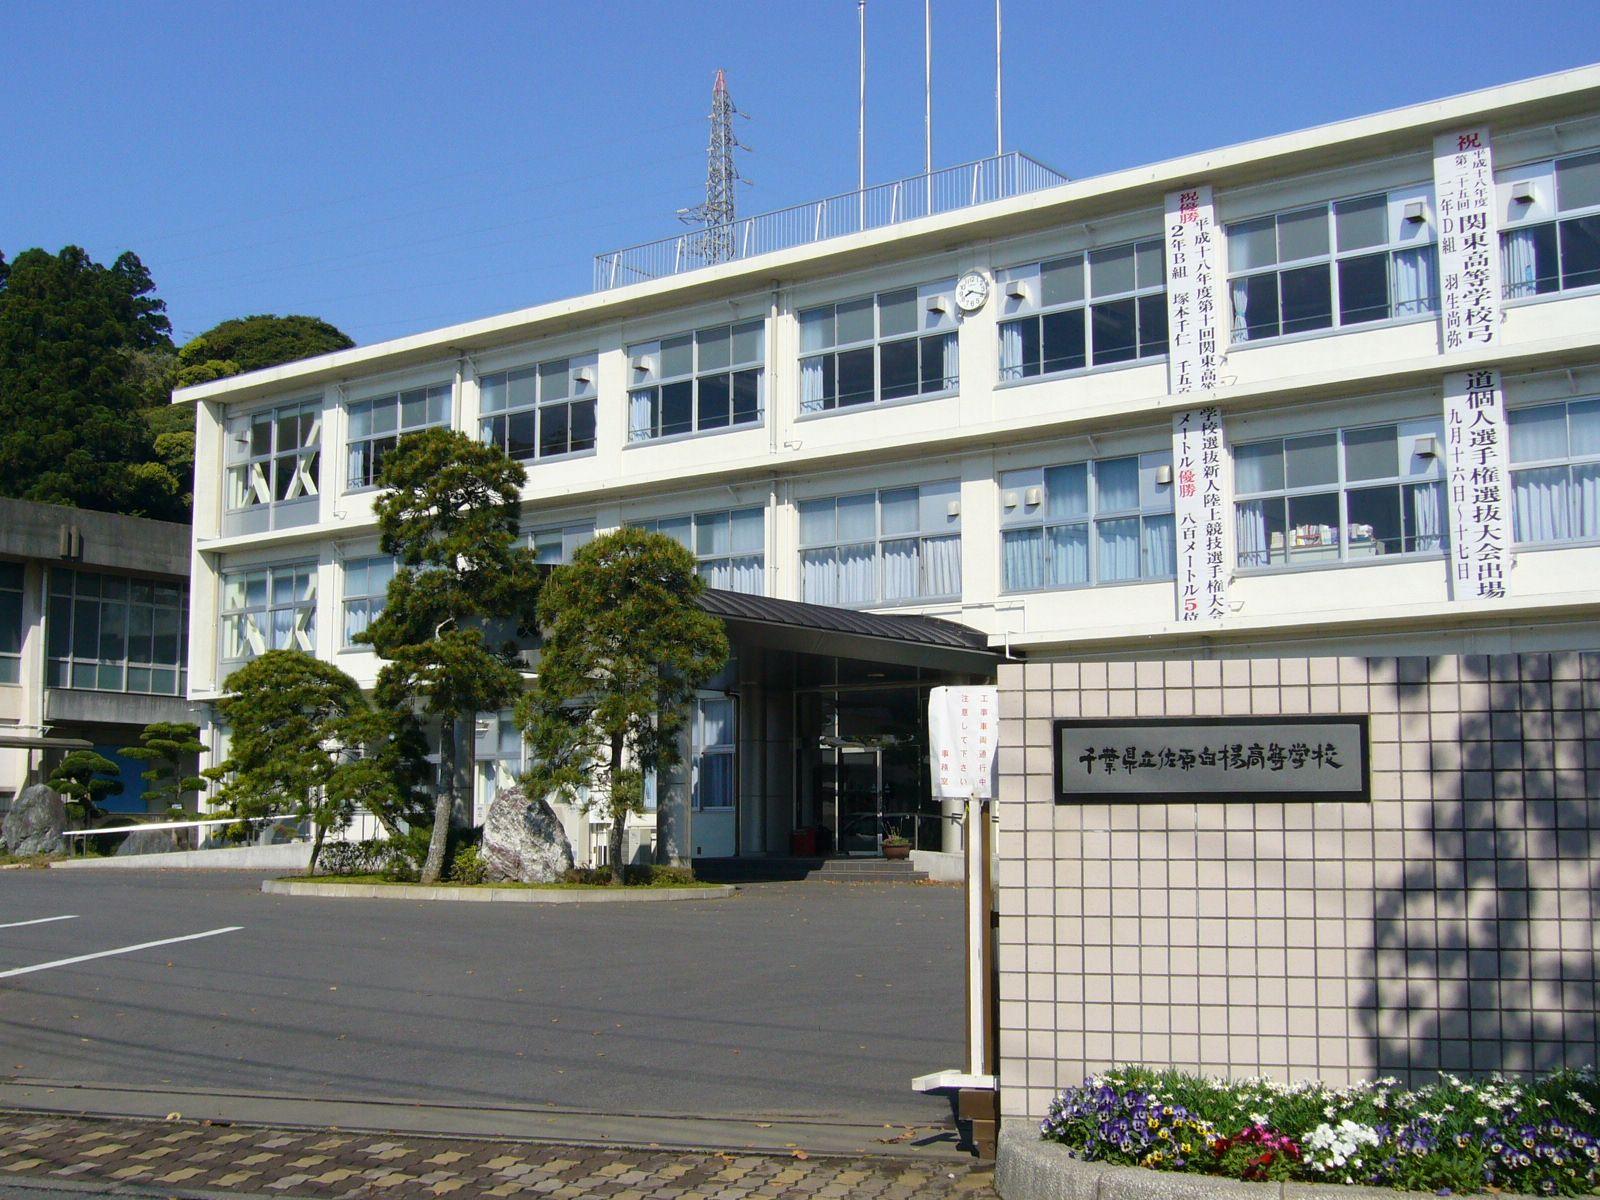 Japan teen school. Средняя школа в Японии здание. Начальная школа в Японии здание. Старшая школа в Японии здание. Японская школа снаружи.